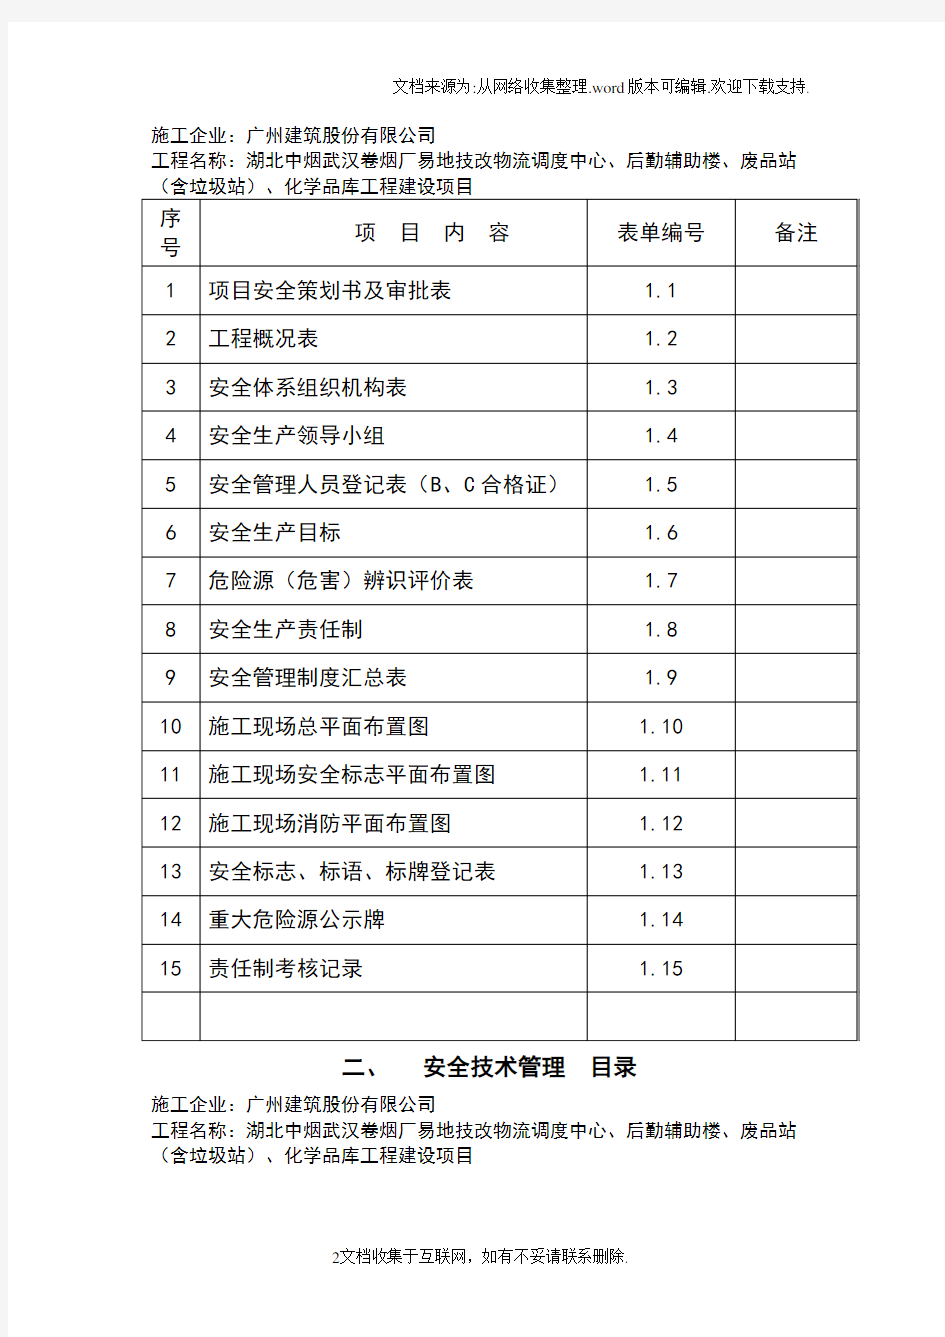 武汉市建筑工程安全文明施工标准化指导手册